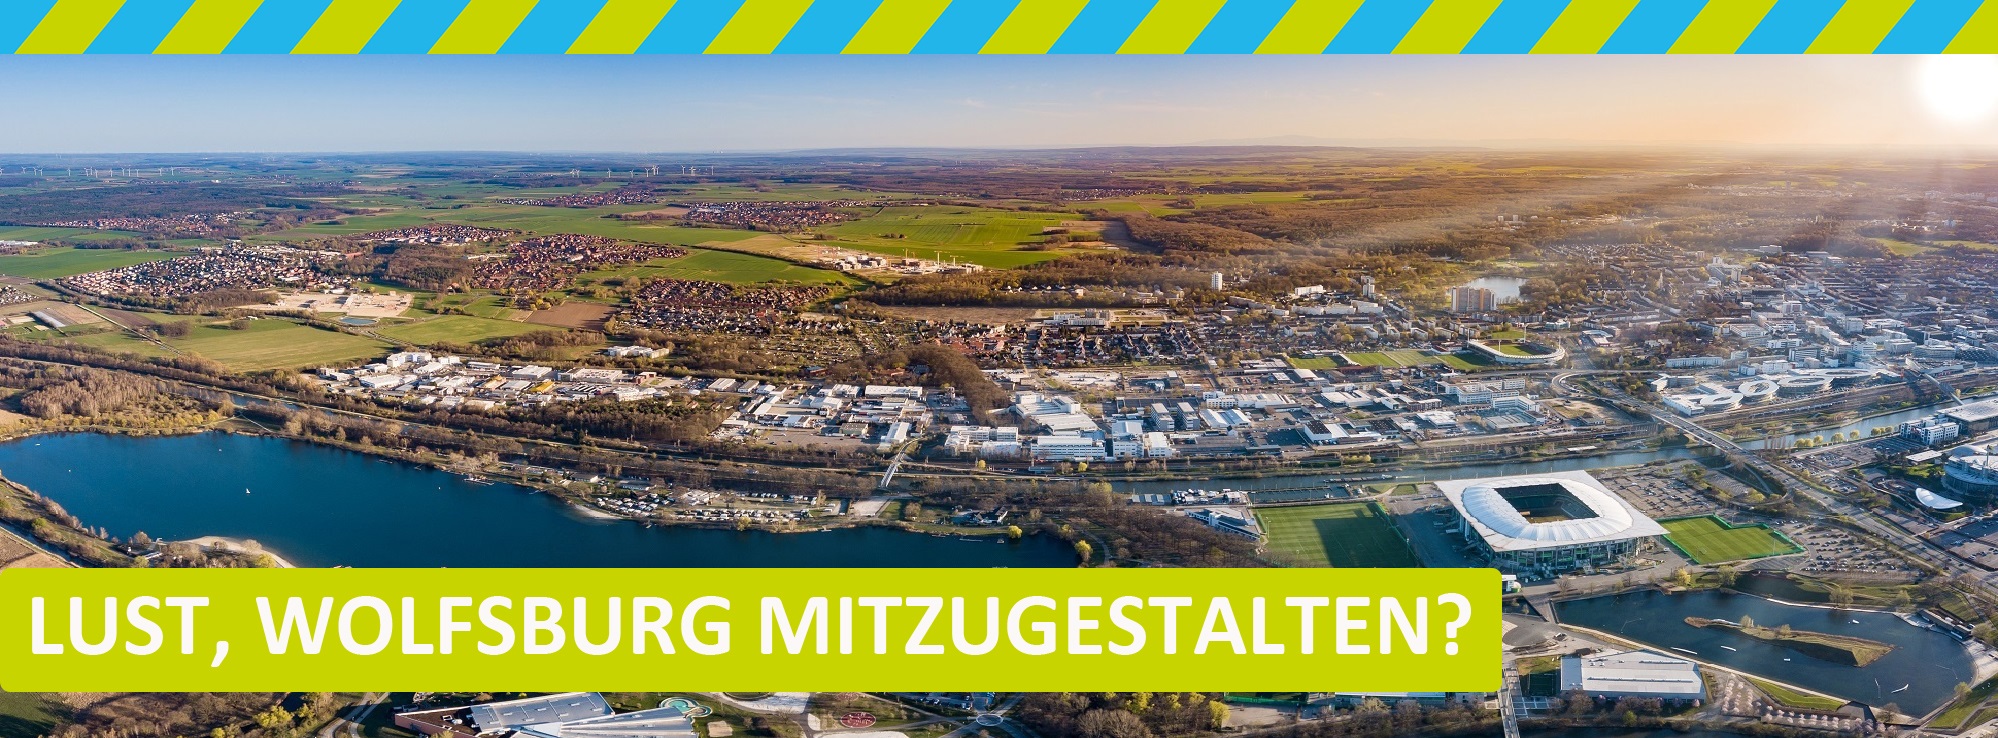 Luftbild vom Allerpark und der Schriftzug "Lust, Wolfsburg mitzugestalten?"